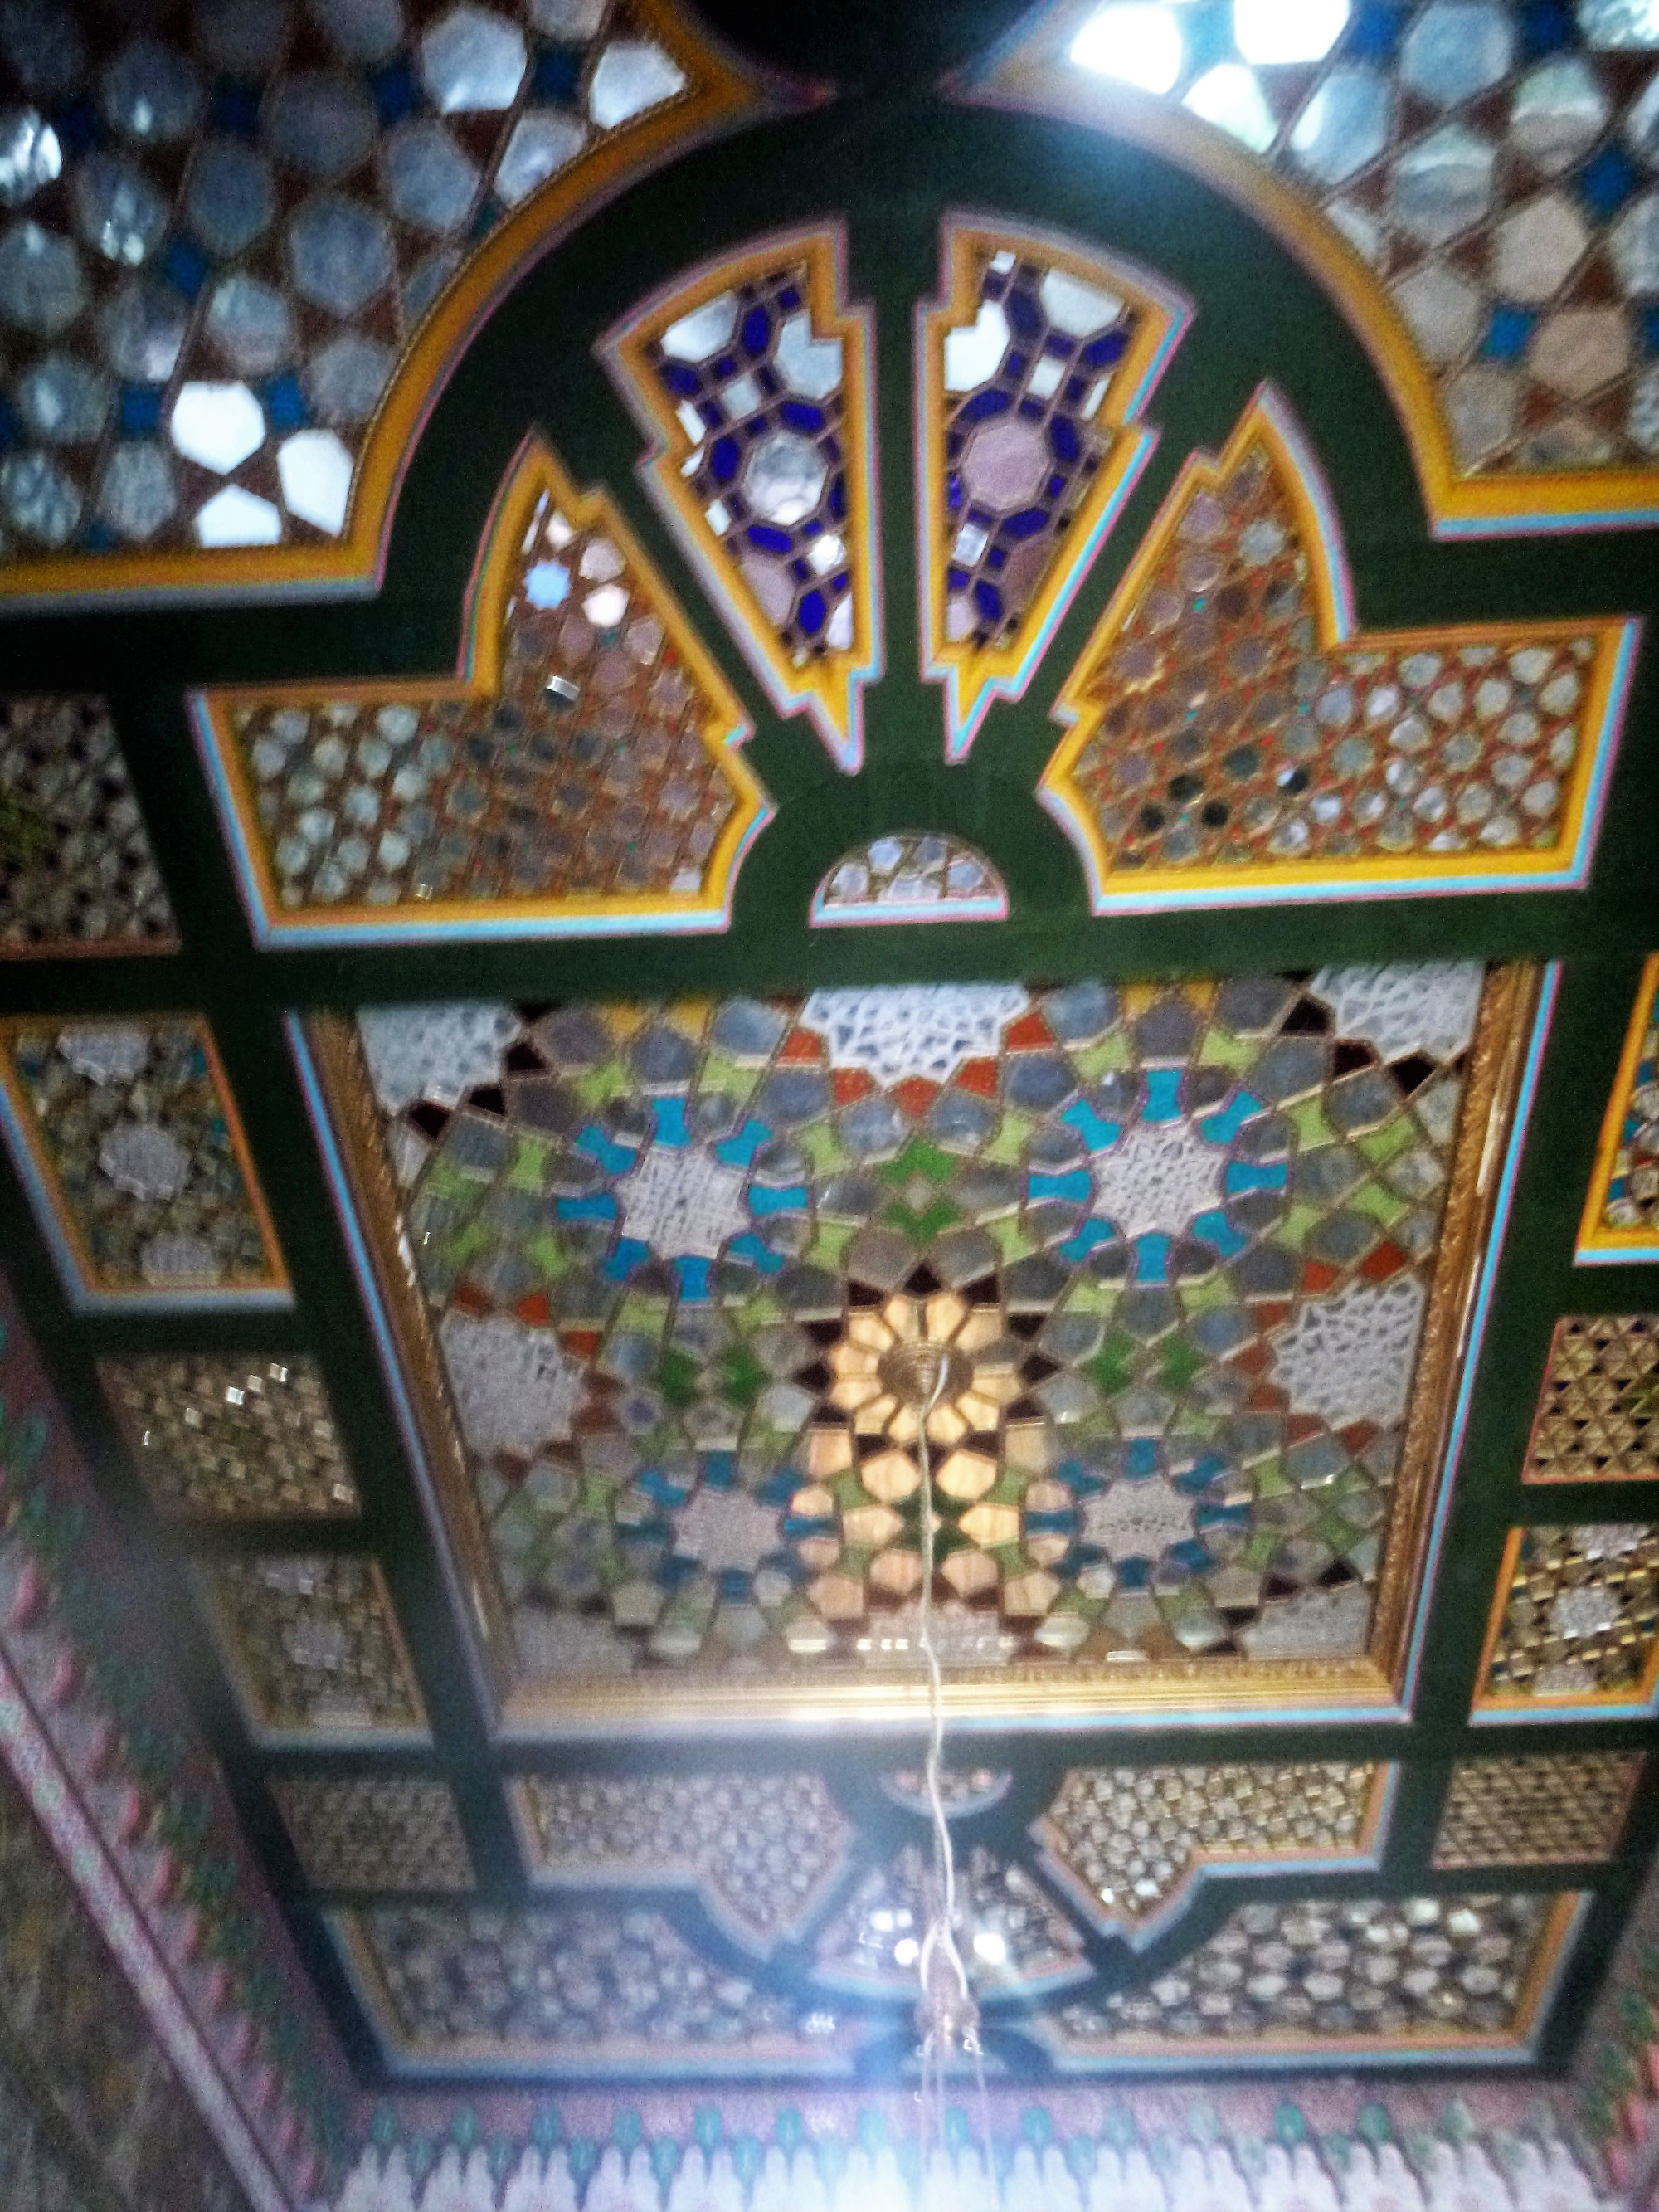 Sitorai-Mokhi-Khosa palace, Узбекистан